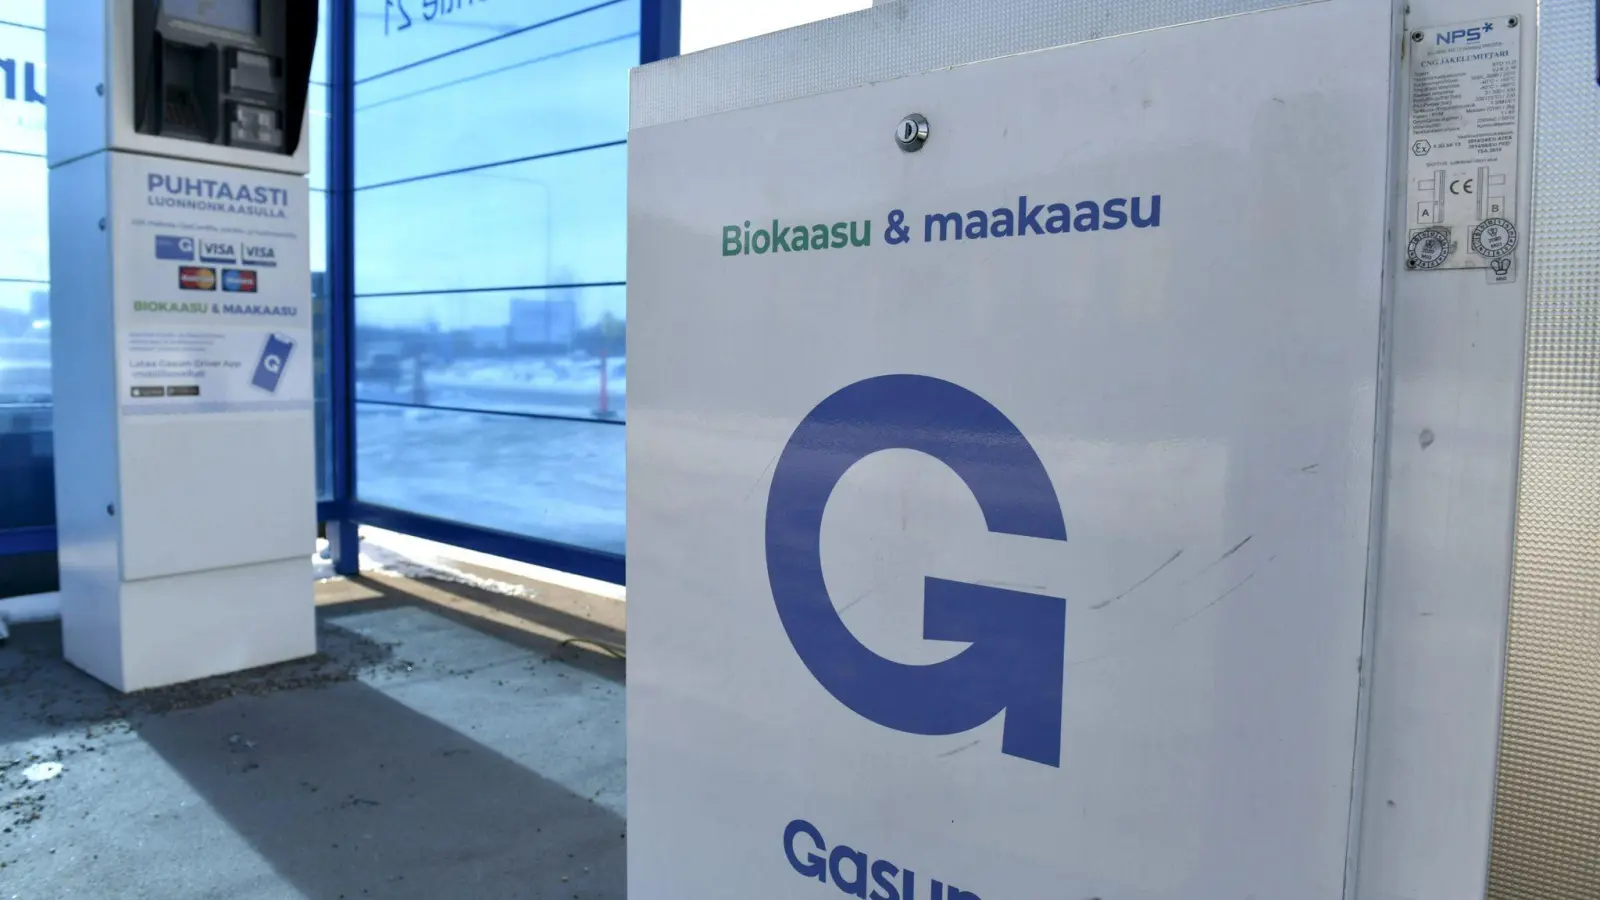 Tankstelle des Energieunternehmens Gasum in Espoo. Russland hat seine Gas-Lieferungen nach Finnland wie angekündigt eingestellt. (Foto: Heikki Saukkomaa/Lehtikuva/dpa)